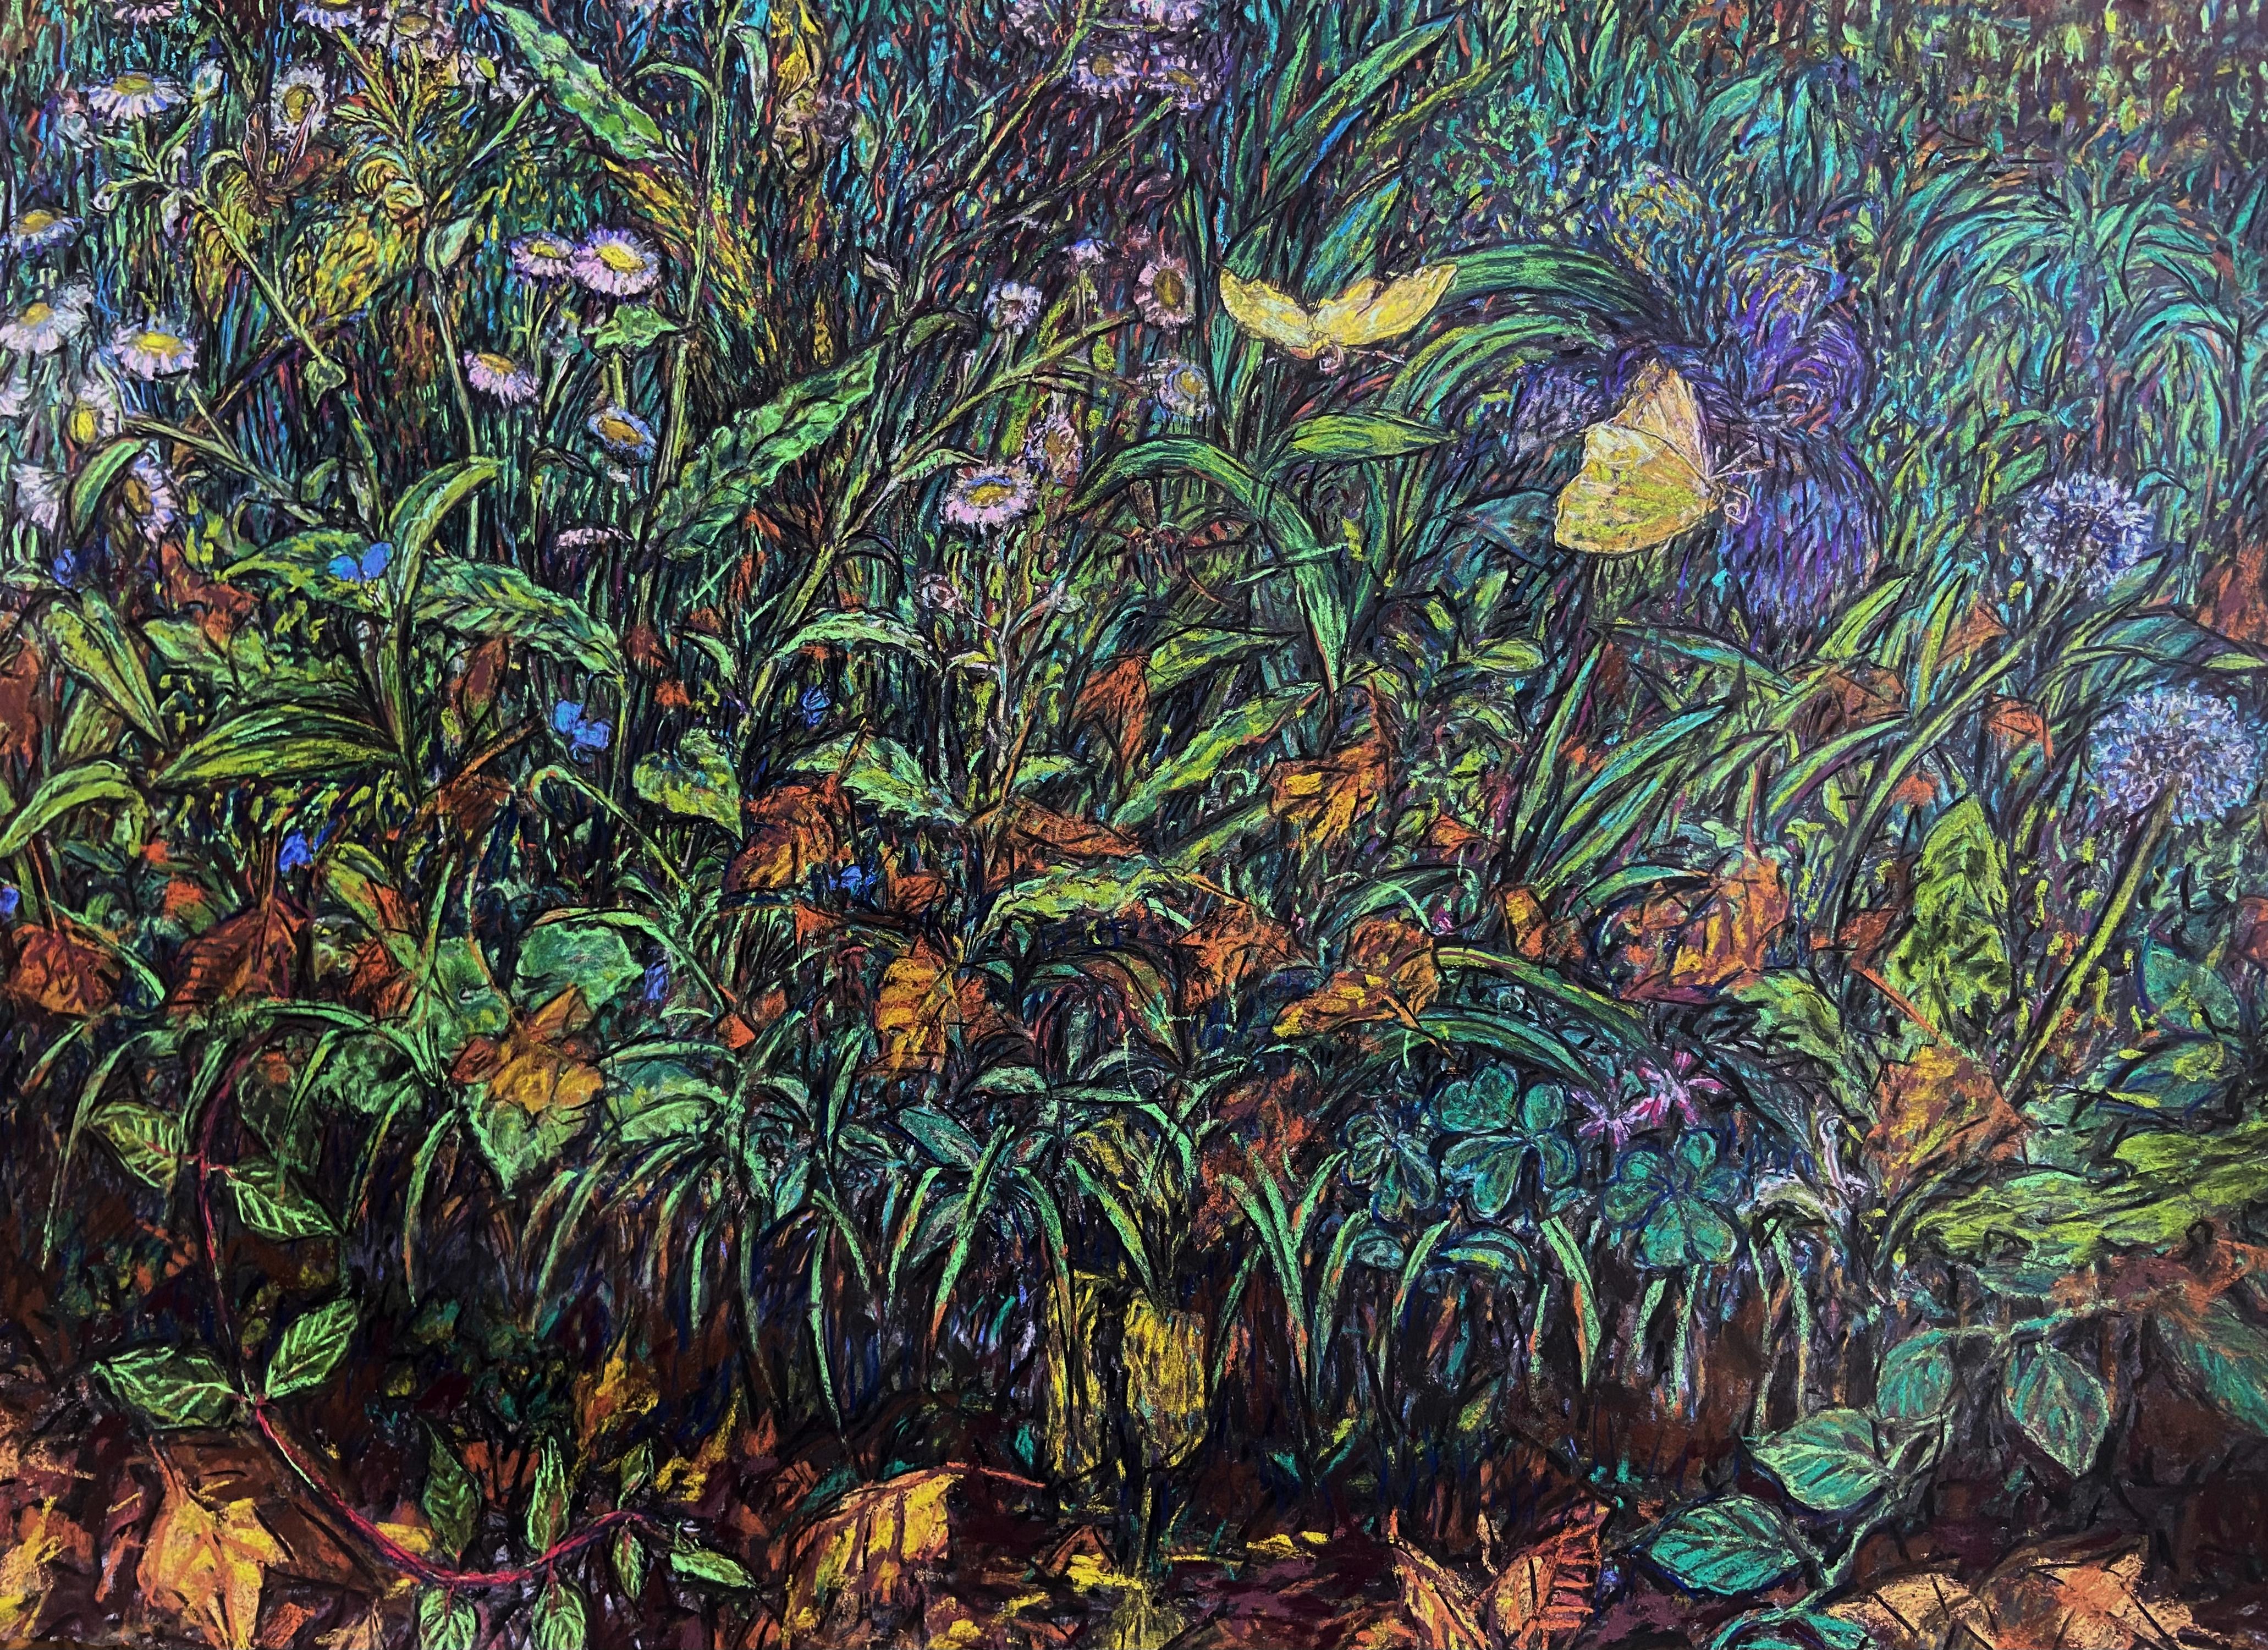 Landscape Art Erin Dixon - "Papillons jaunes" - dessin au pastel, nature, plantes, nature morte, paysage